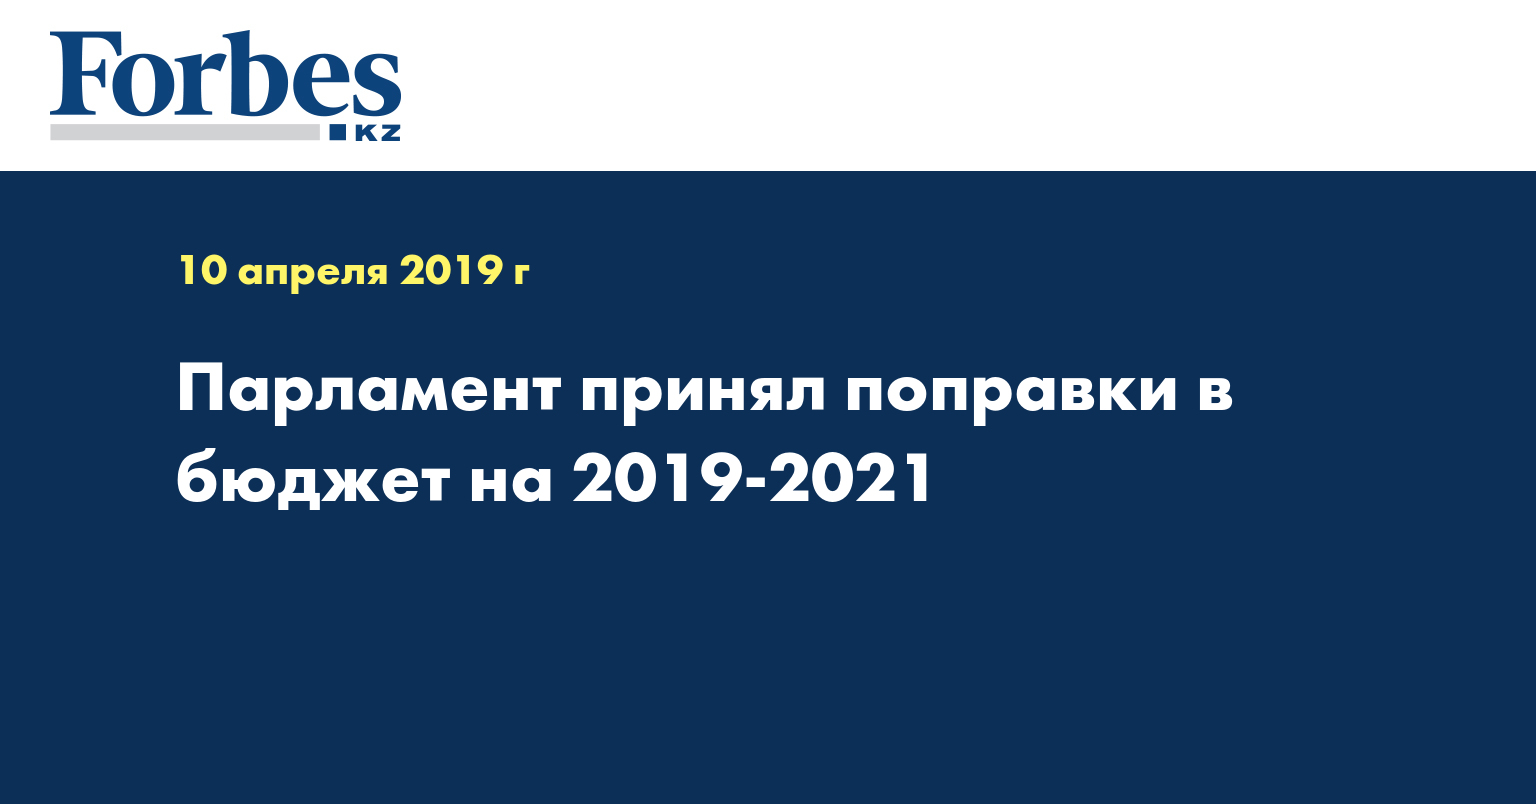 Парламент принял поправки в бюджет на 2019-2021